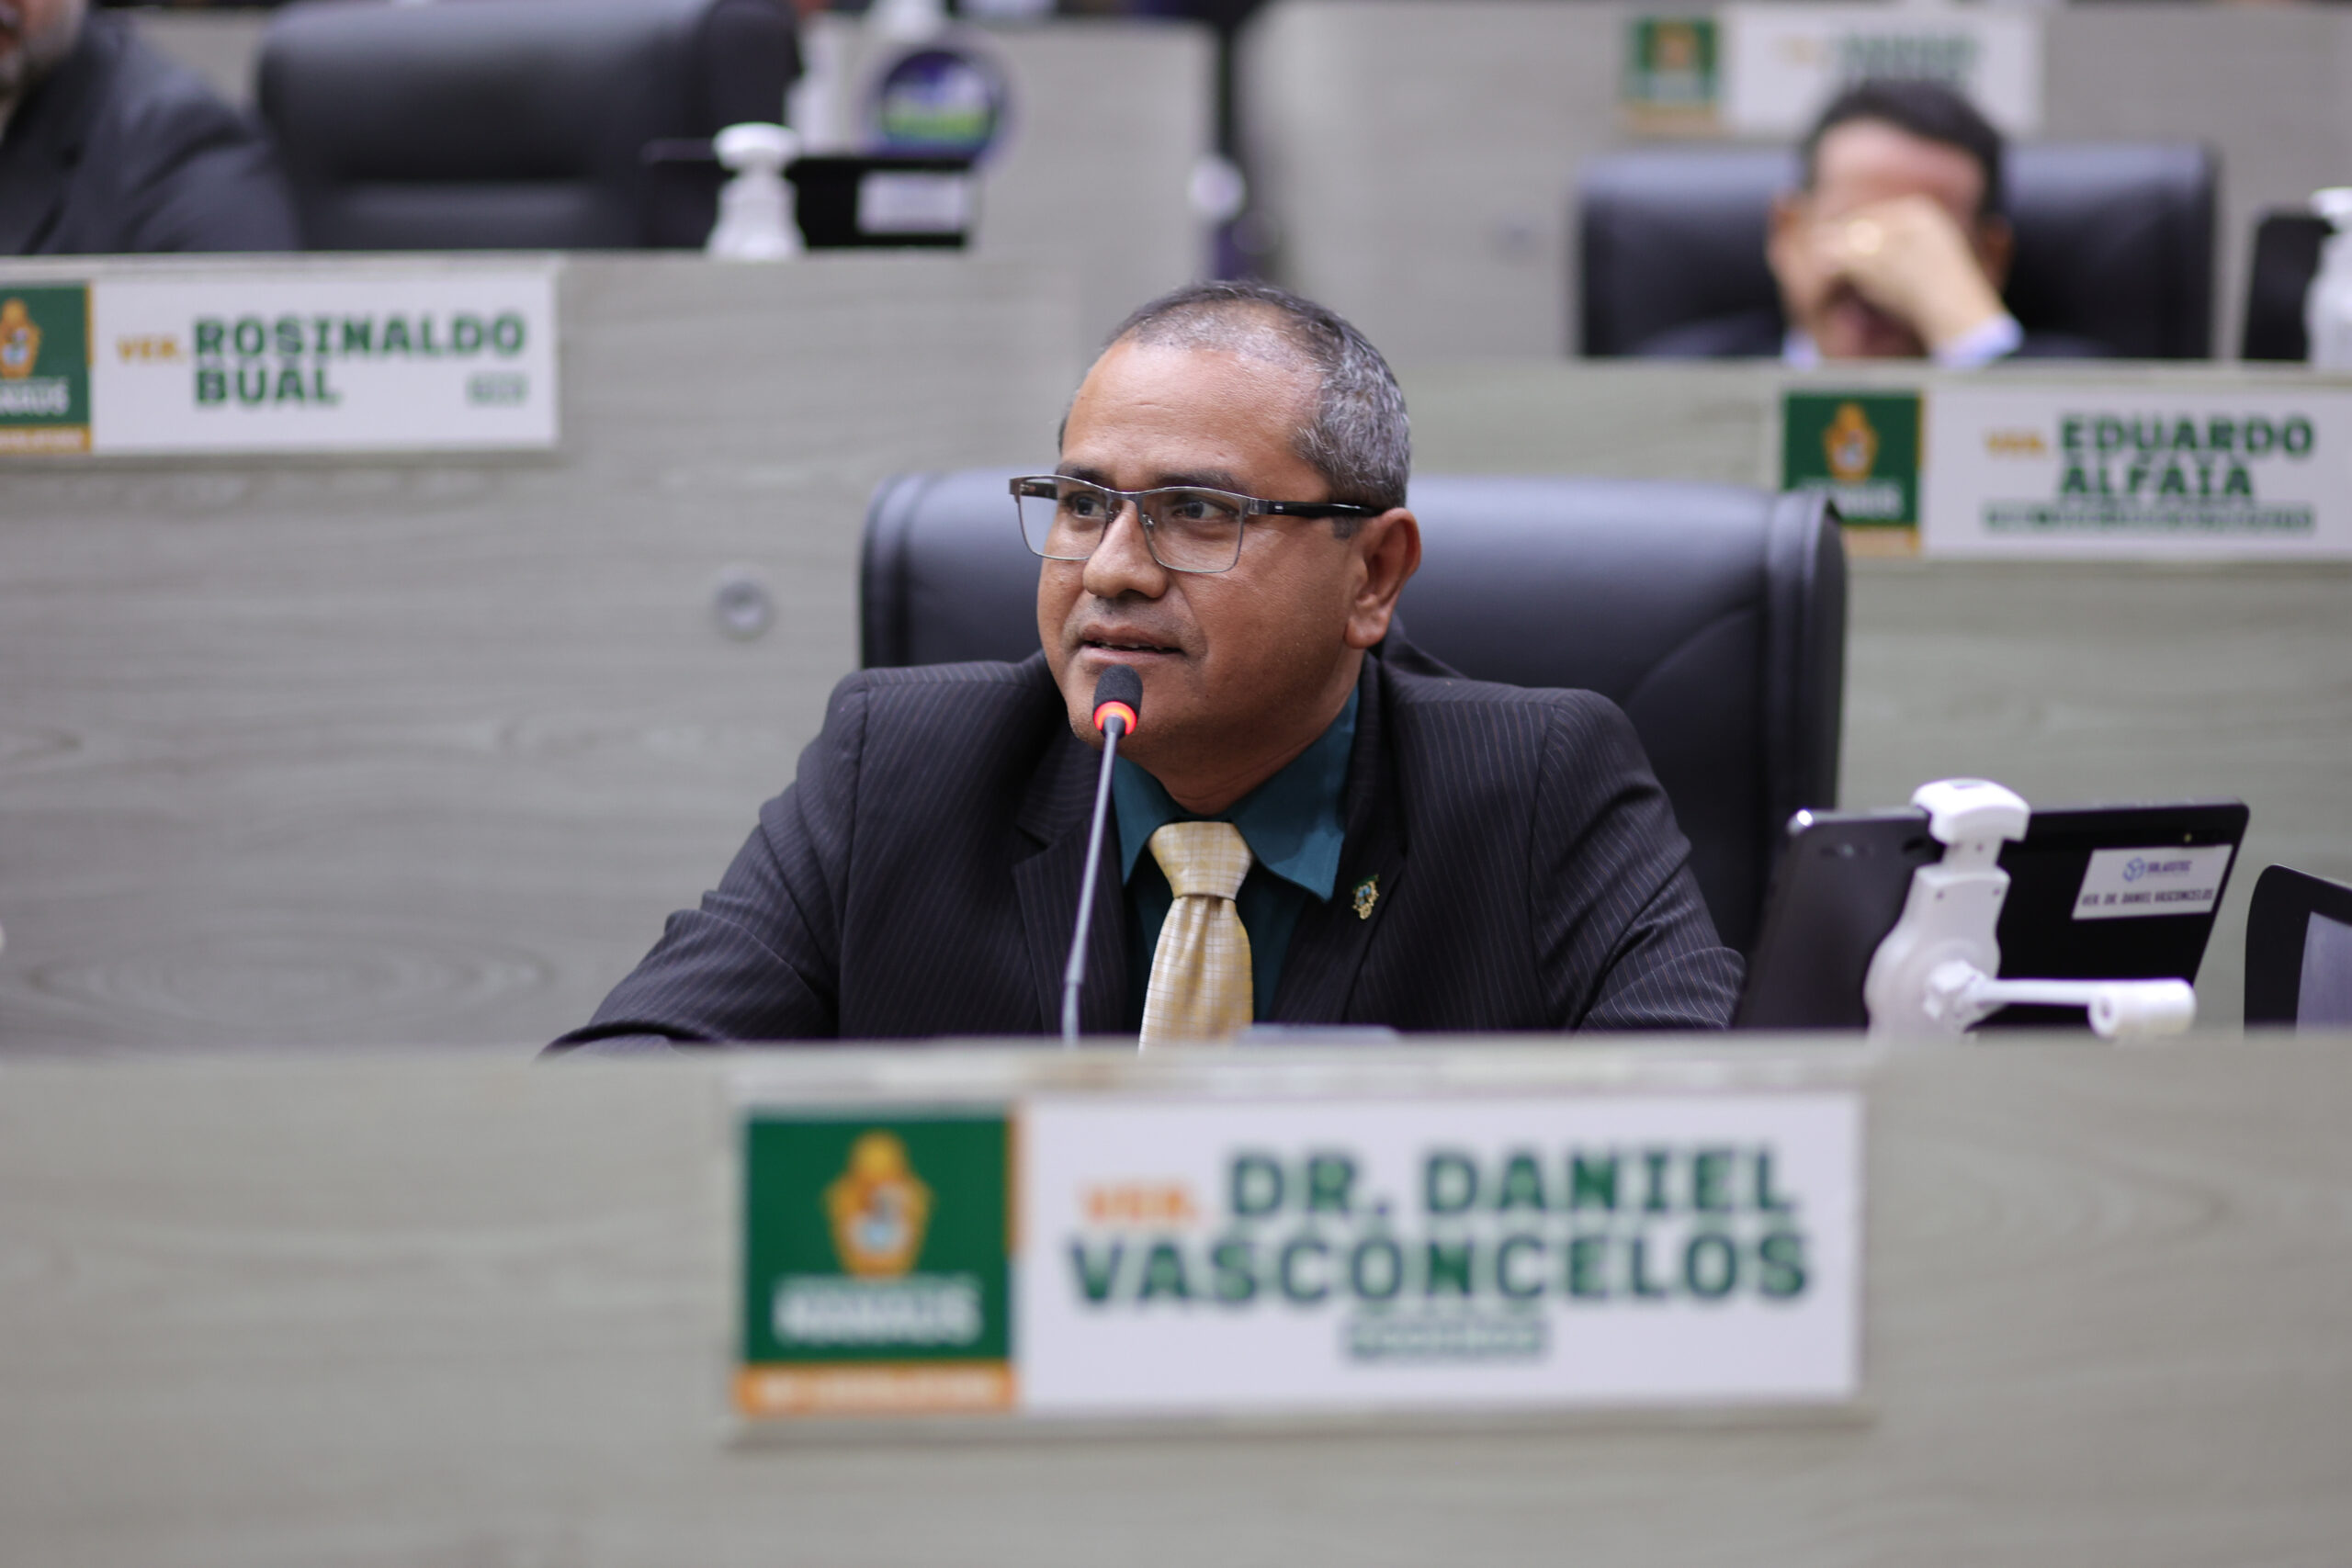 PL de Dr. Daniel Vasconcelos, que prevê atendimento integral às pessoas com epilepsia, avança na CMM